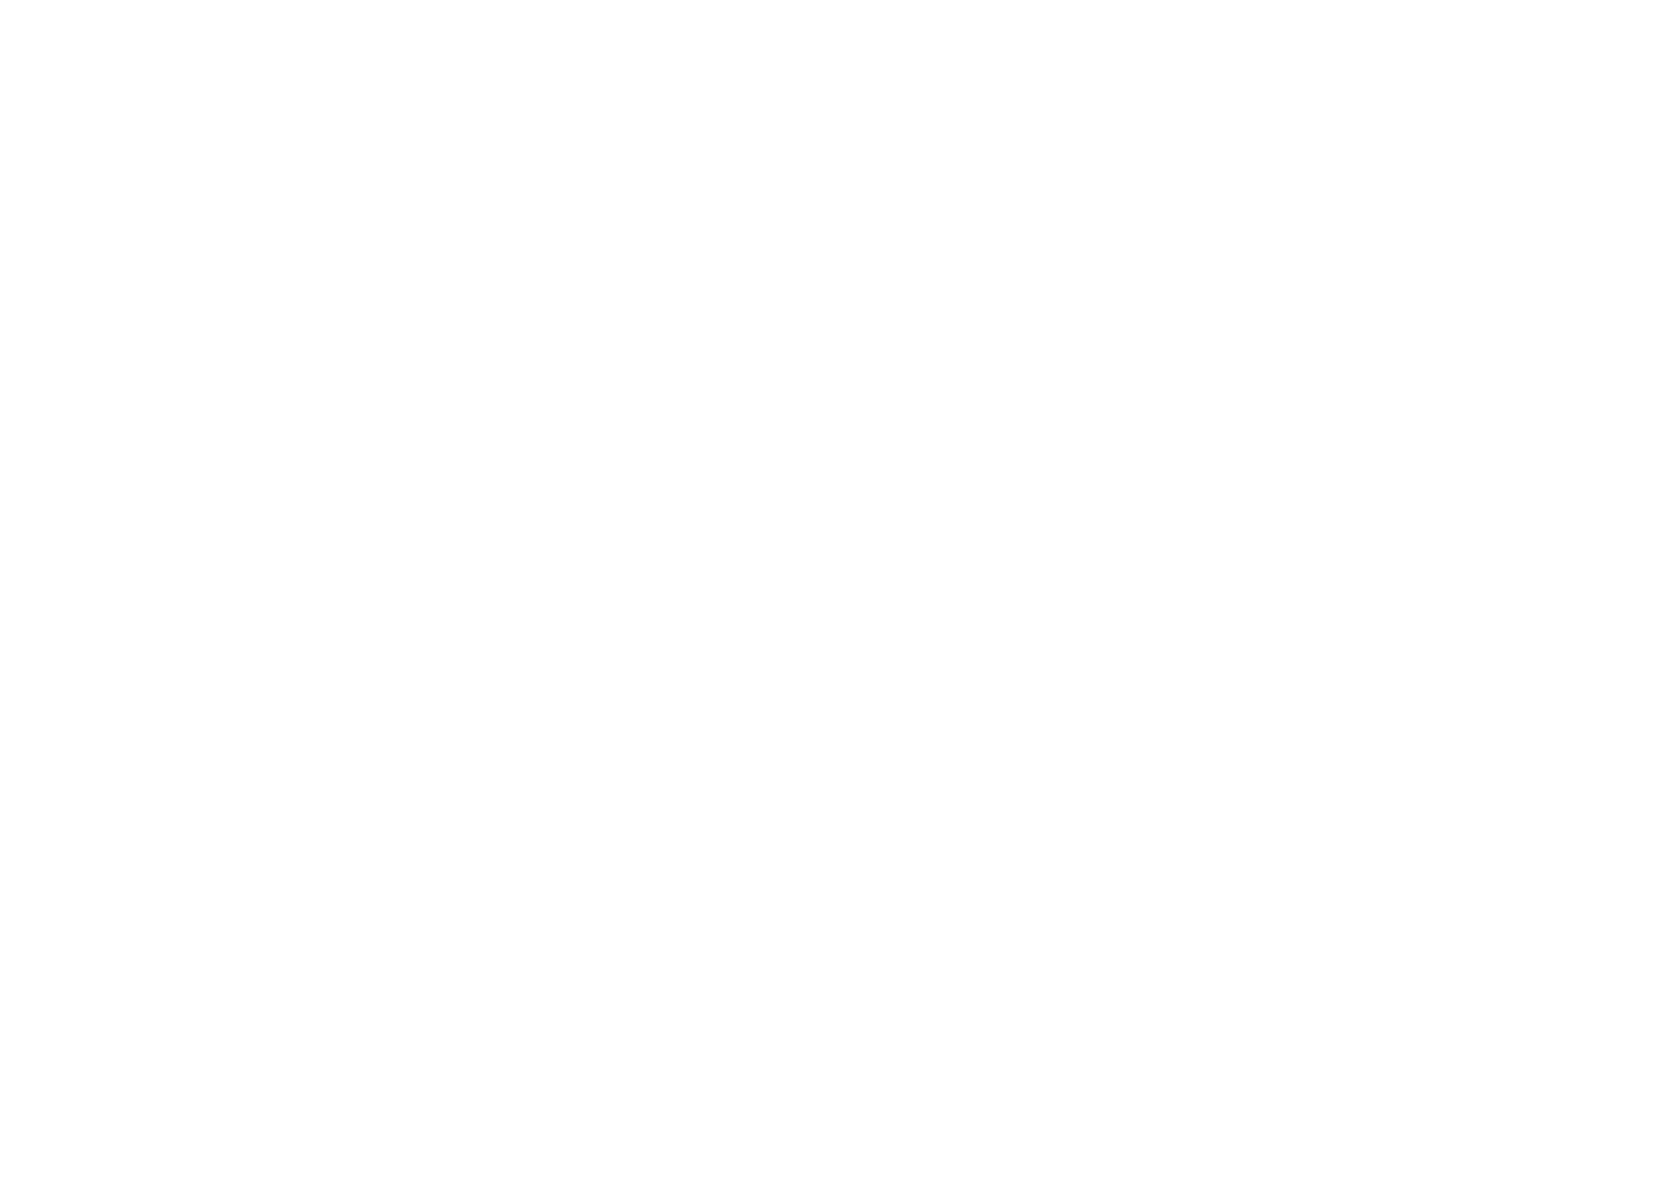 Ohio.org